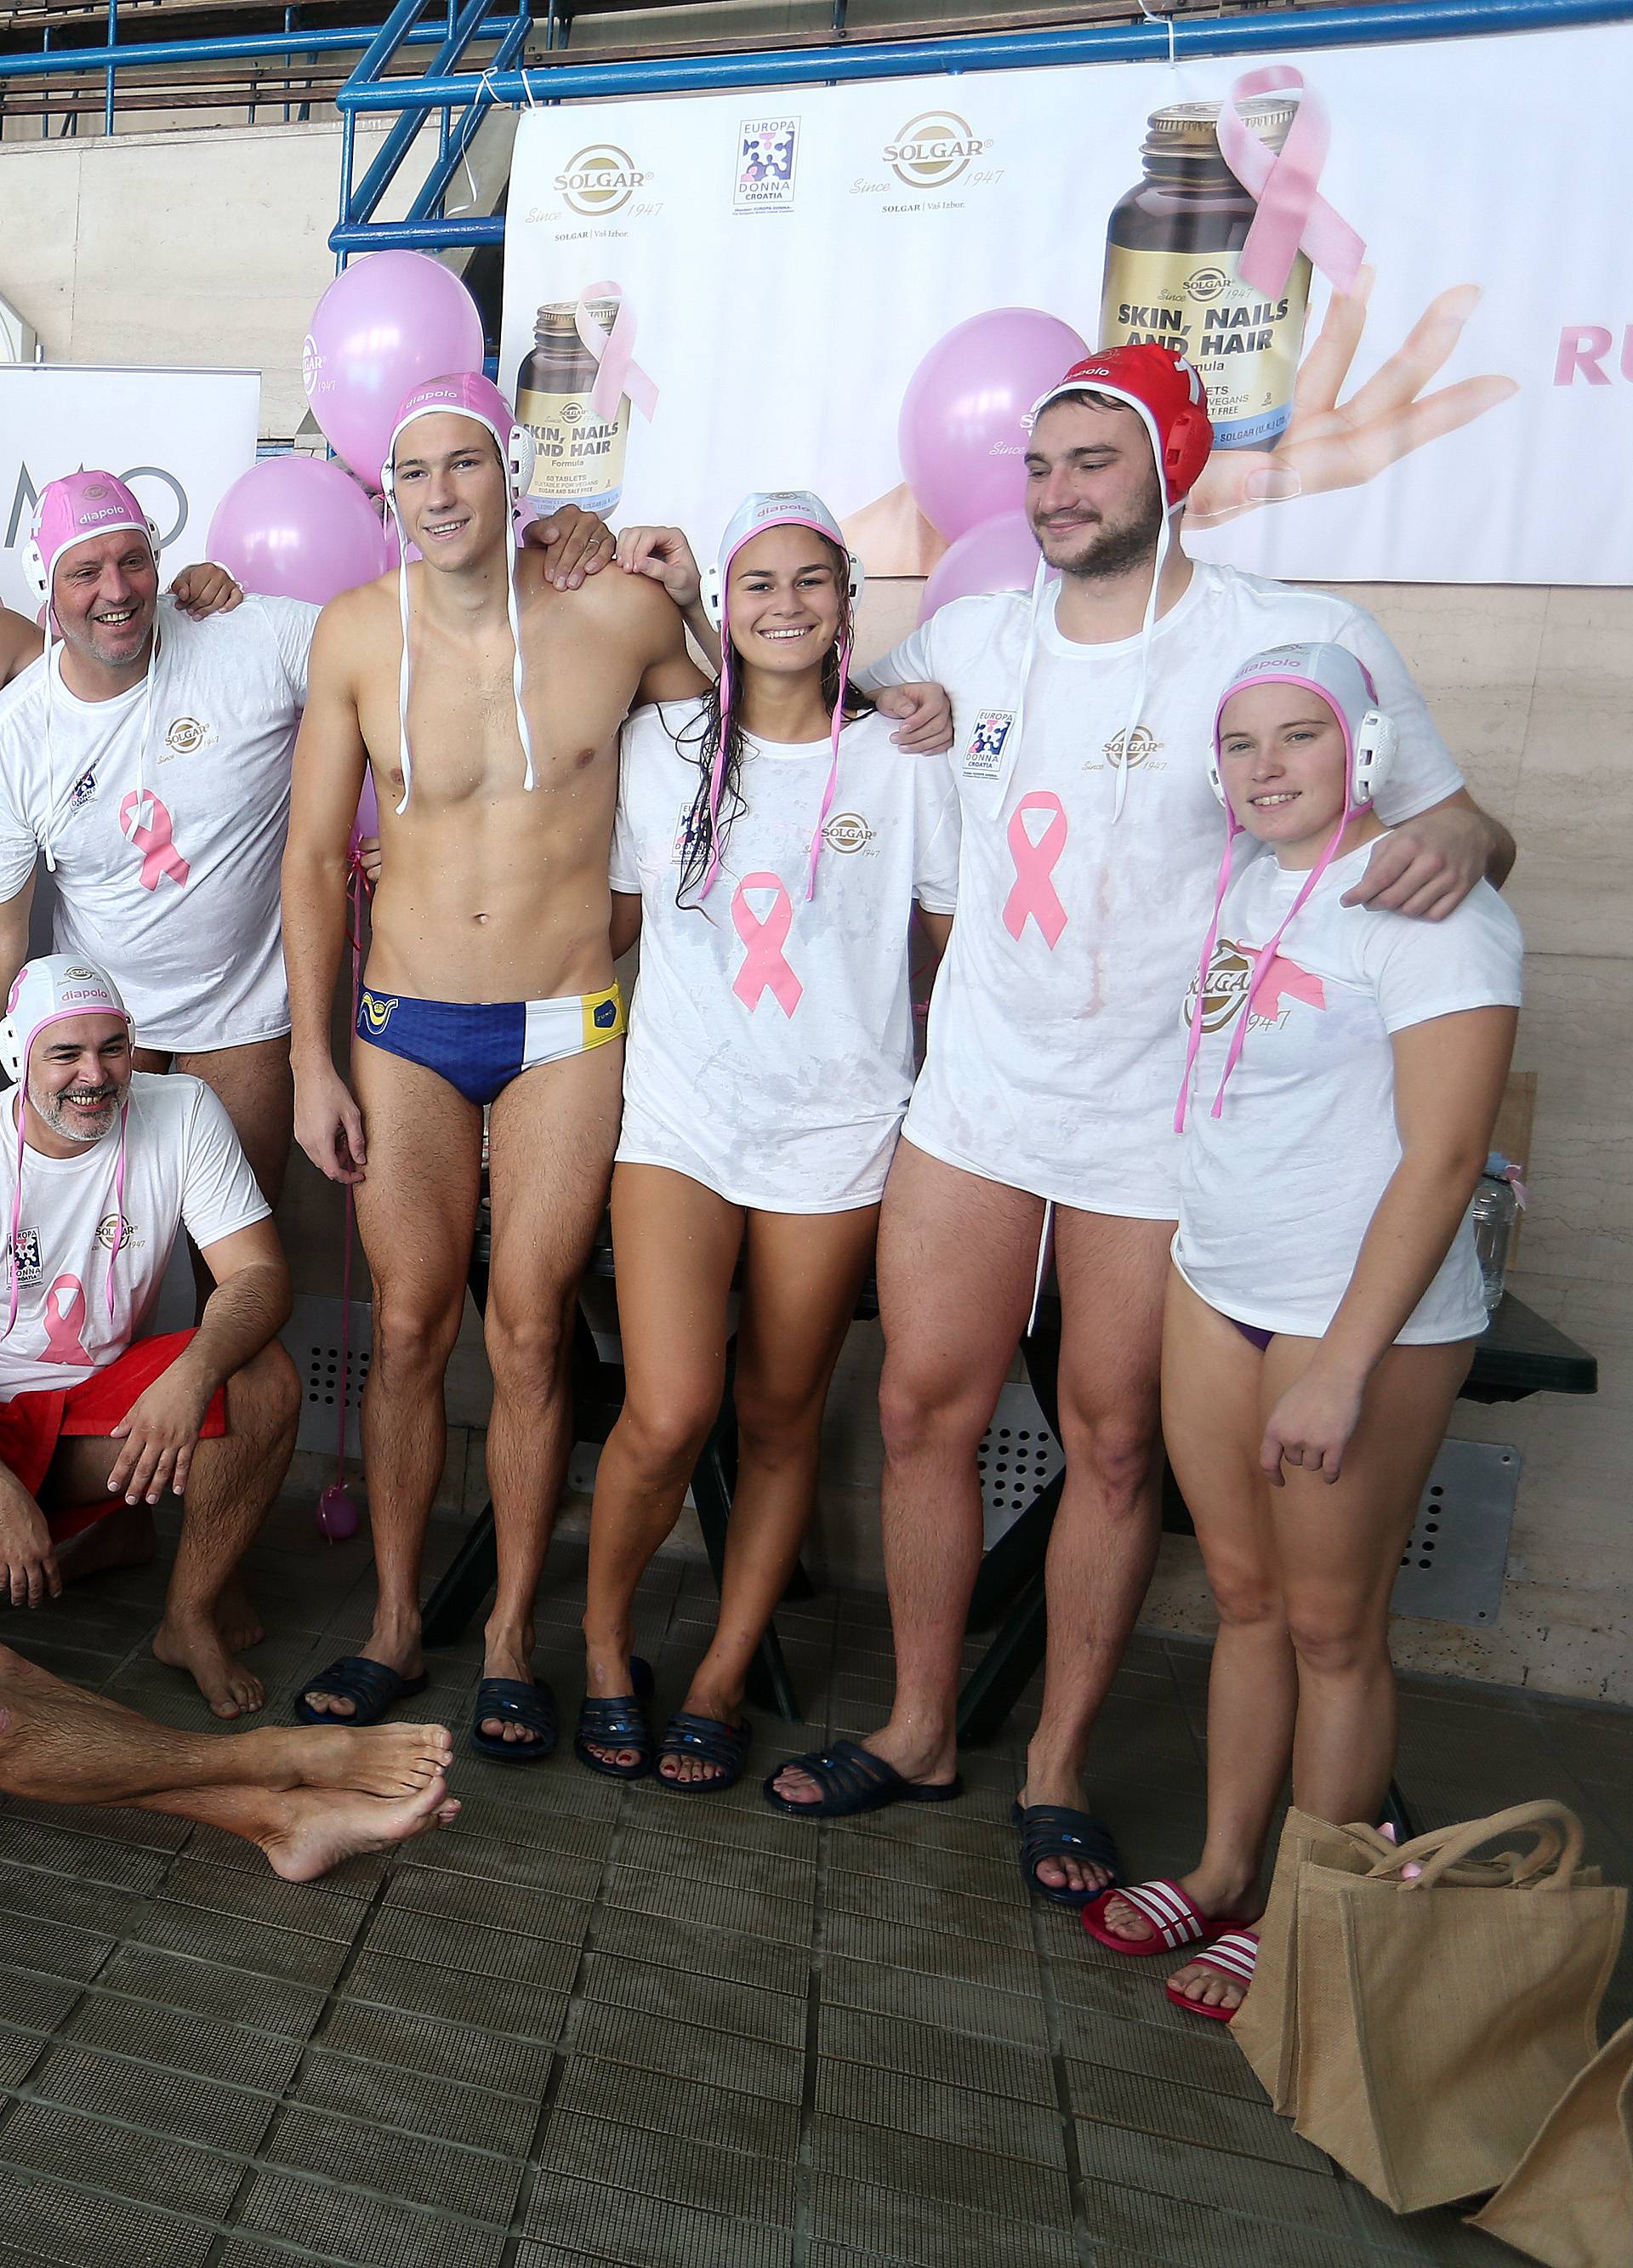 Poznati igrali vaterpolo kako bi podigli svijest o raku dojke